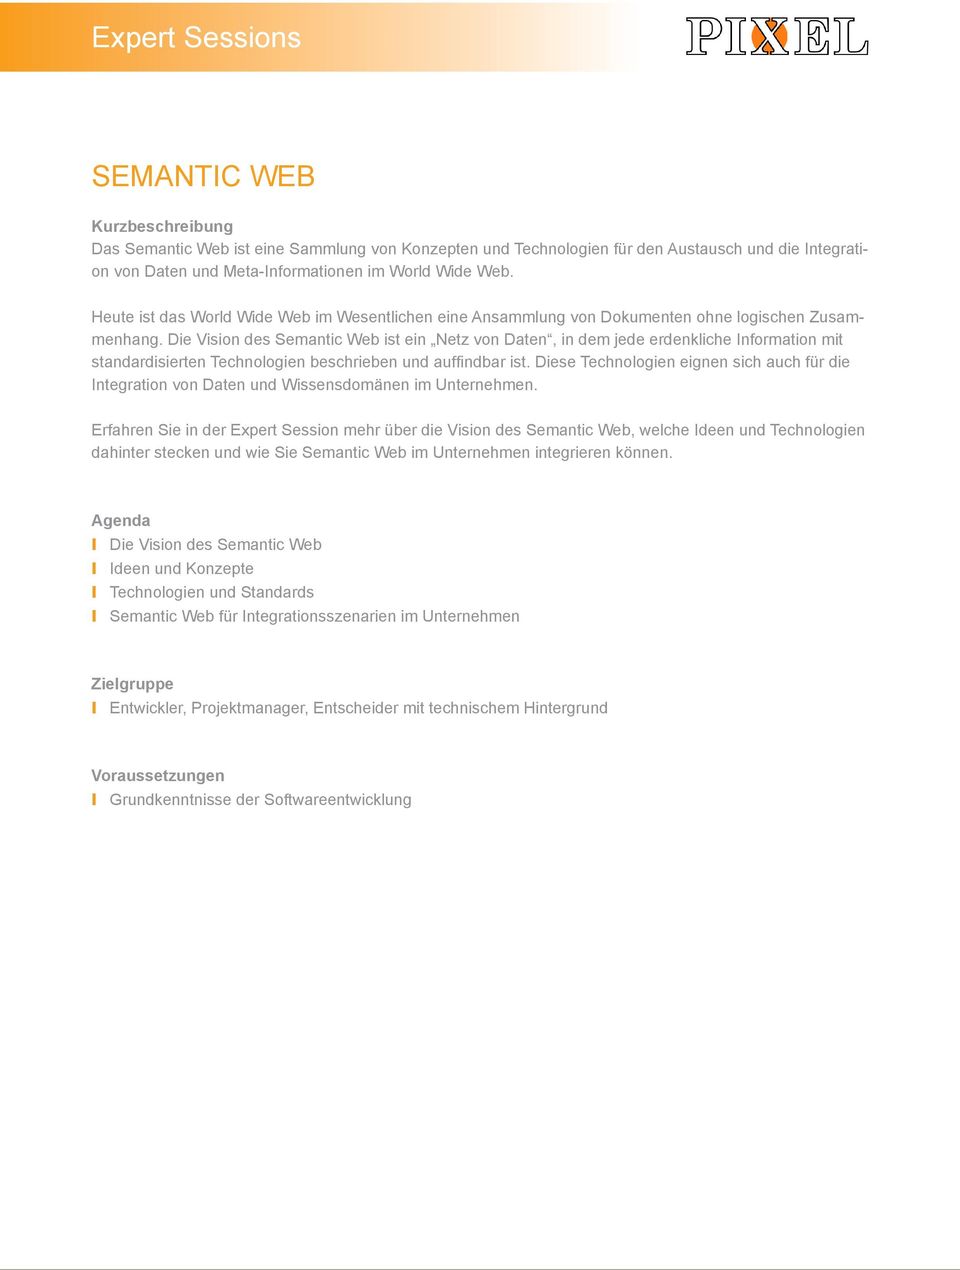 Die Vision des Semantic Web ist ein Netz von Daten, in dem jede erdenkliche Information mit standardisierten Technologien beschrieben und auffindbar ist.